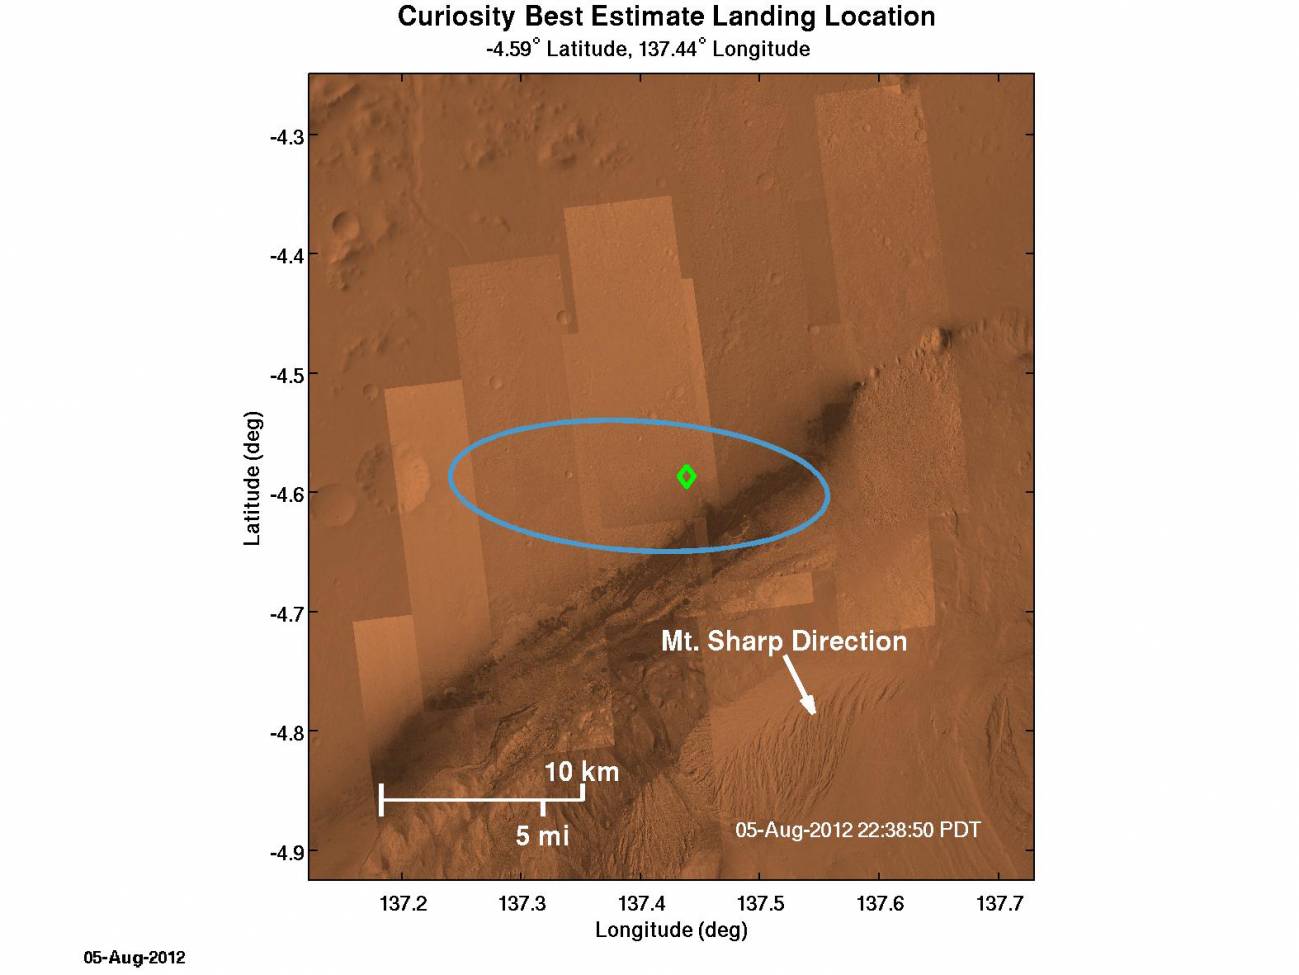  El Curiosity aterrizó a unos dos kilómetros al noreste del punto central de su objetivo. Imagen: NASA